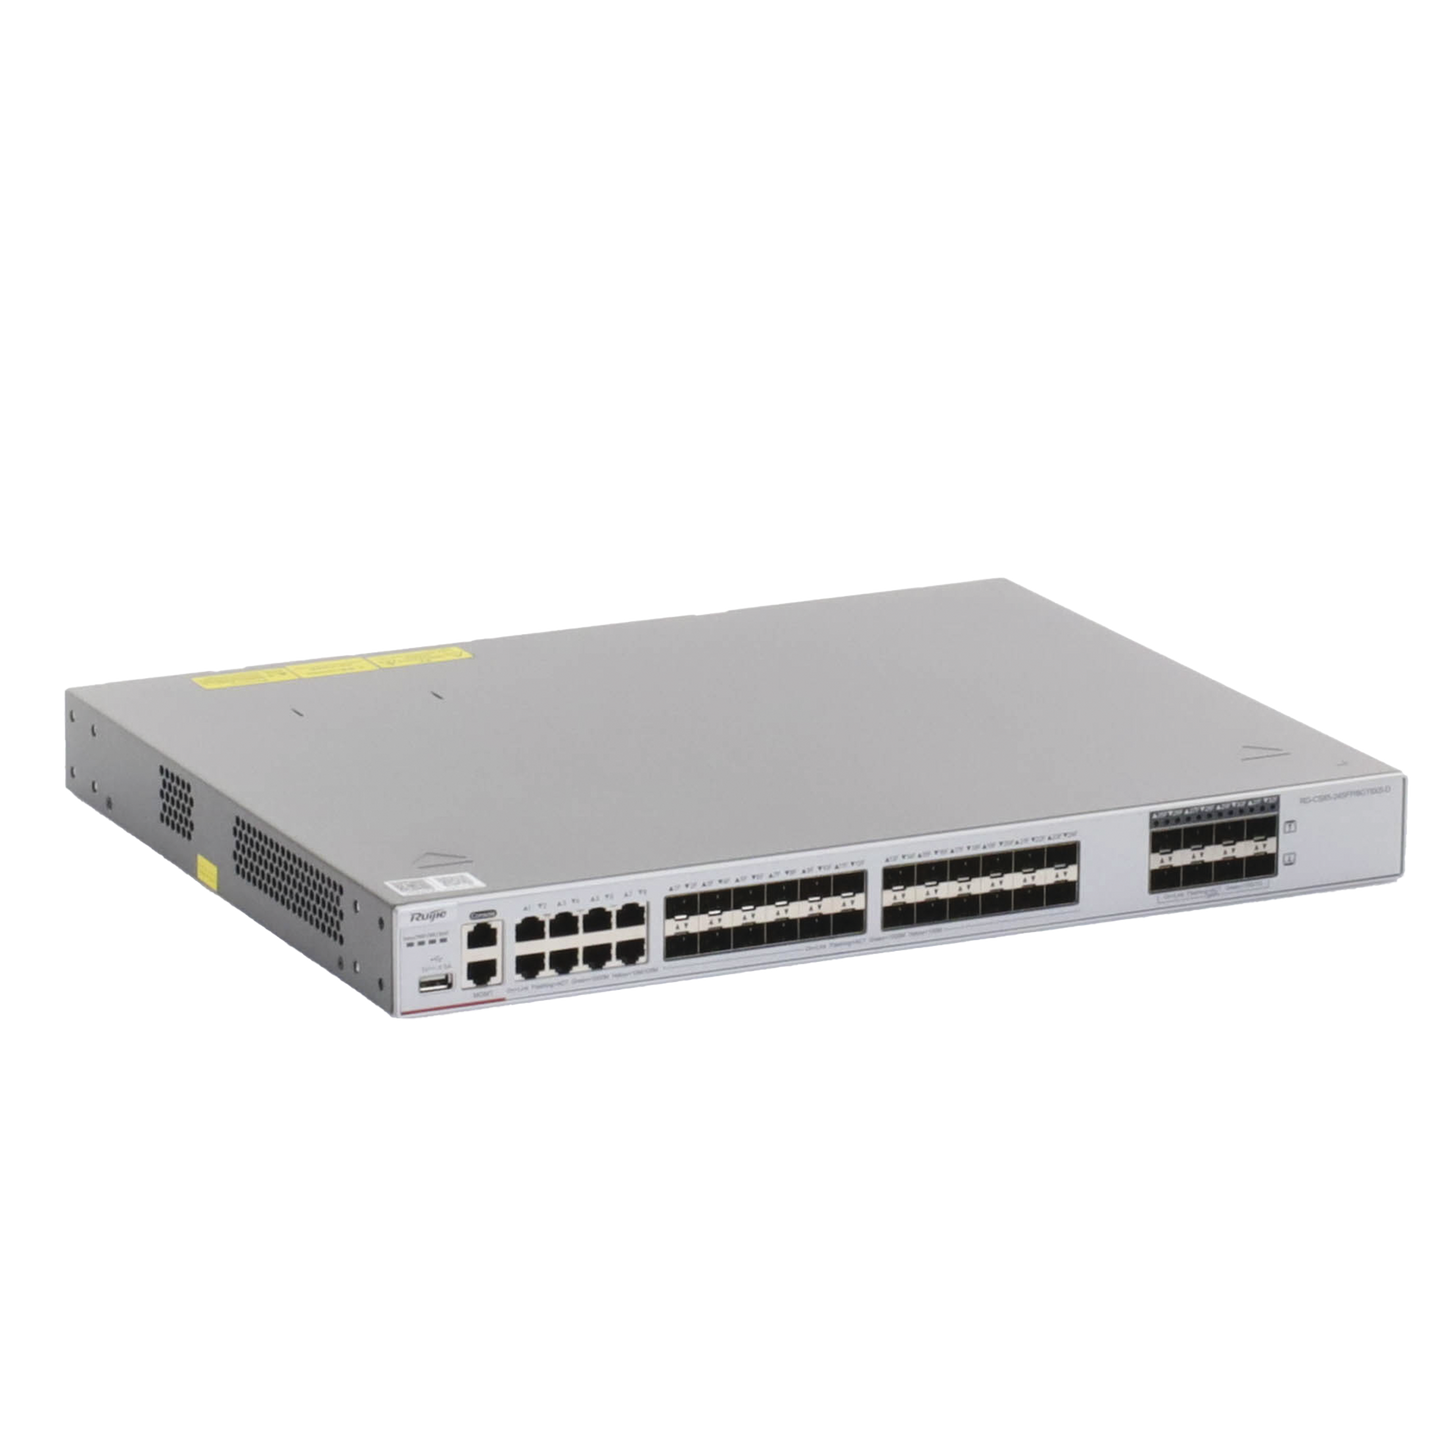 Switch Core Administrable Capa 3 con 8 puertos Gigabit, 24 SFP y 8 SFP+ Combo para fibra 10Gb, gestiÃ³n gratuita desde la nube.